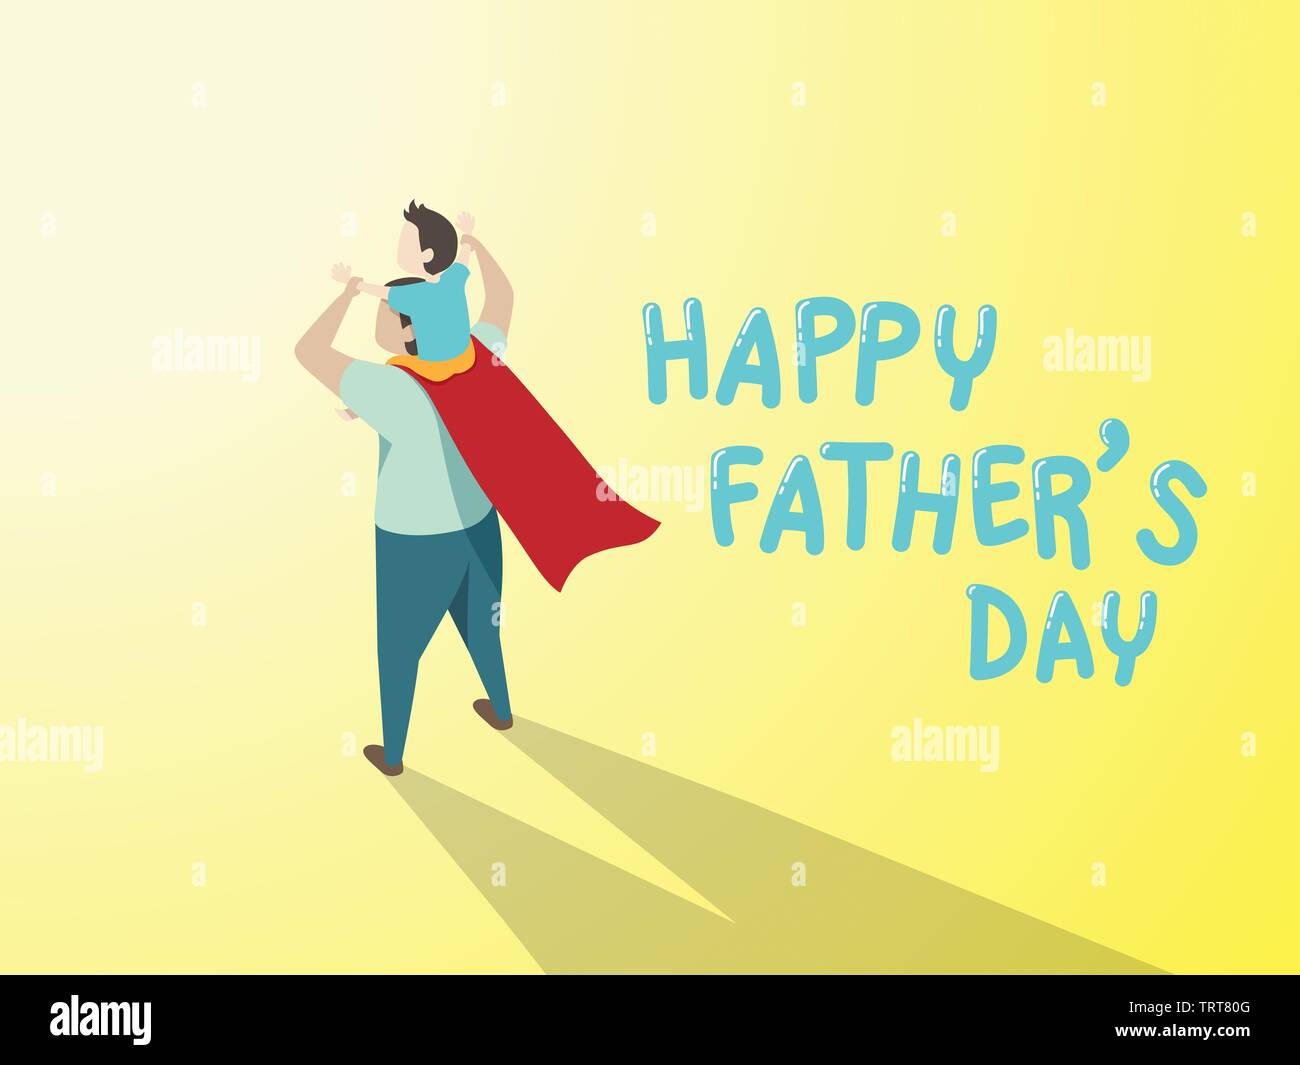 Der Vektor der happy Vatertag Grußkarte. Vati in der Superhelden Kostüm, Sohn Fahrt auf der Schulter mit Tag Text gerne Vater auf gelbem Hintergrund Stock Vektor